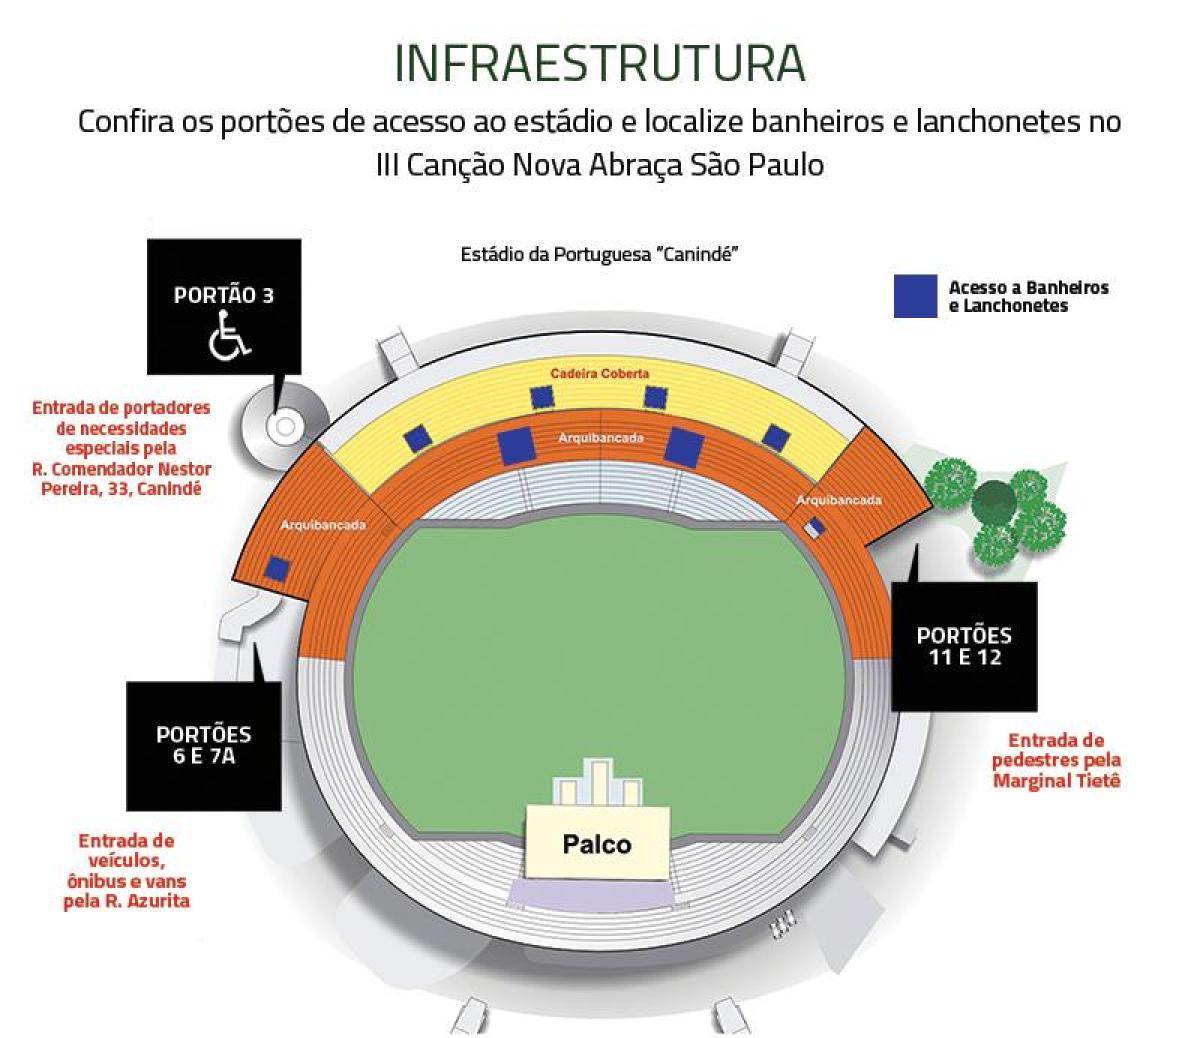 מפה של Canindé סאו פאולו האצטדיון